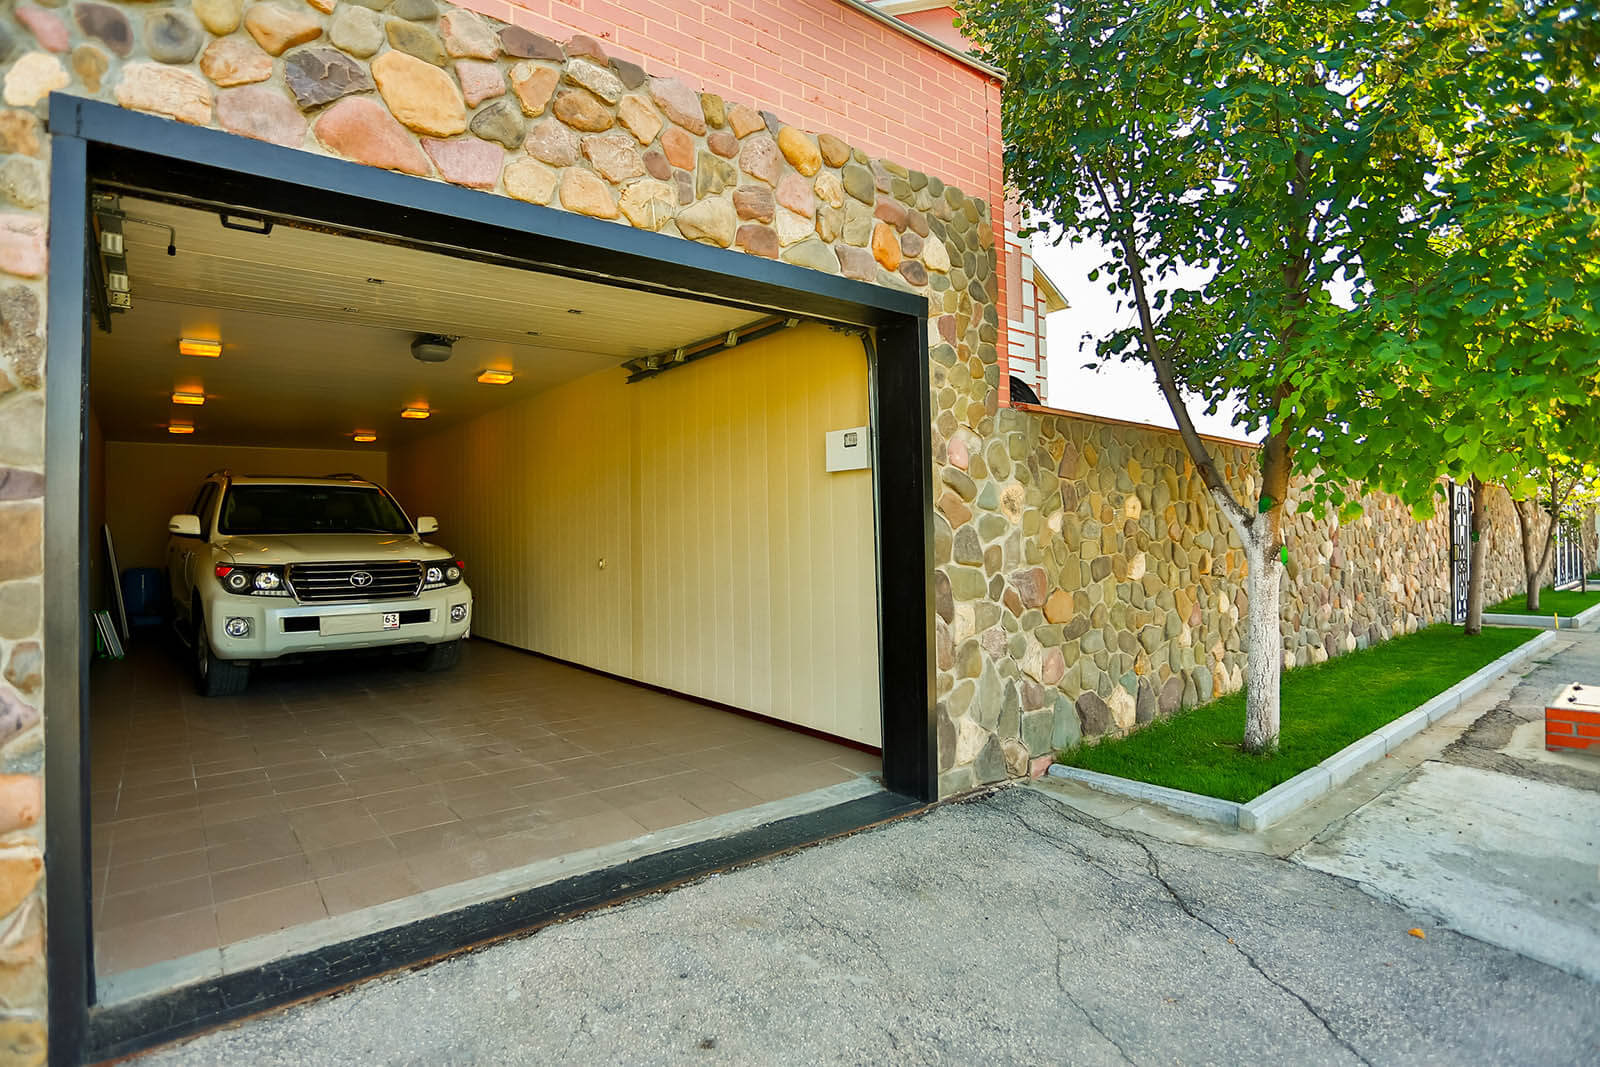 Acquistare un terreno per la costruzione di garage: è redditizio?